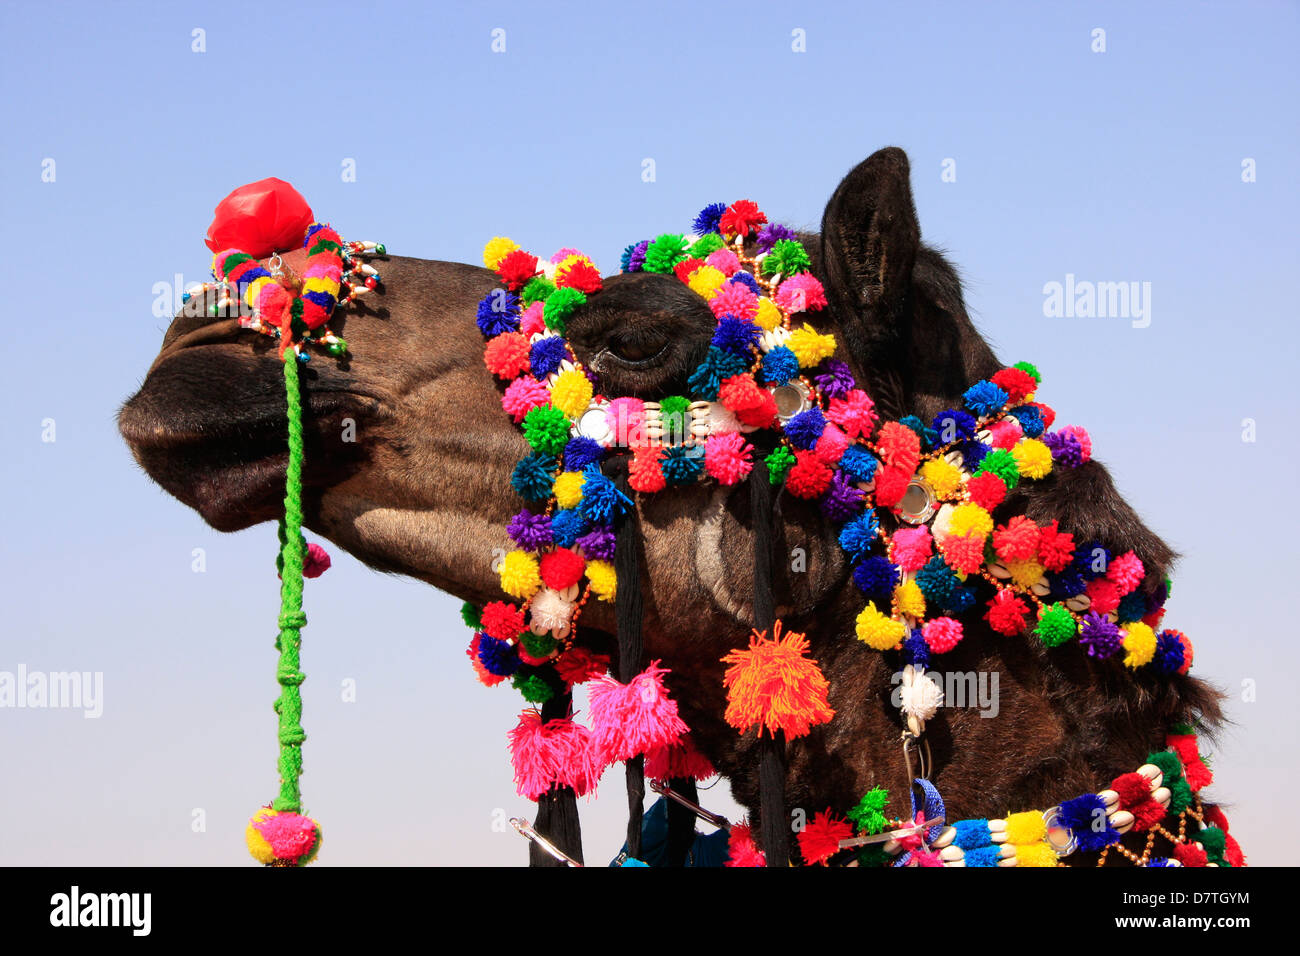 Ritratto di decorate di cammello, di Jaisalmer, Rajasthan, India Foto Stock